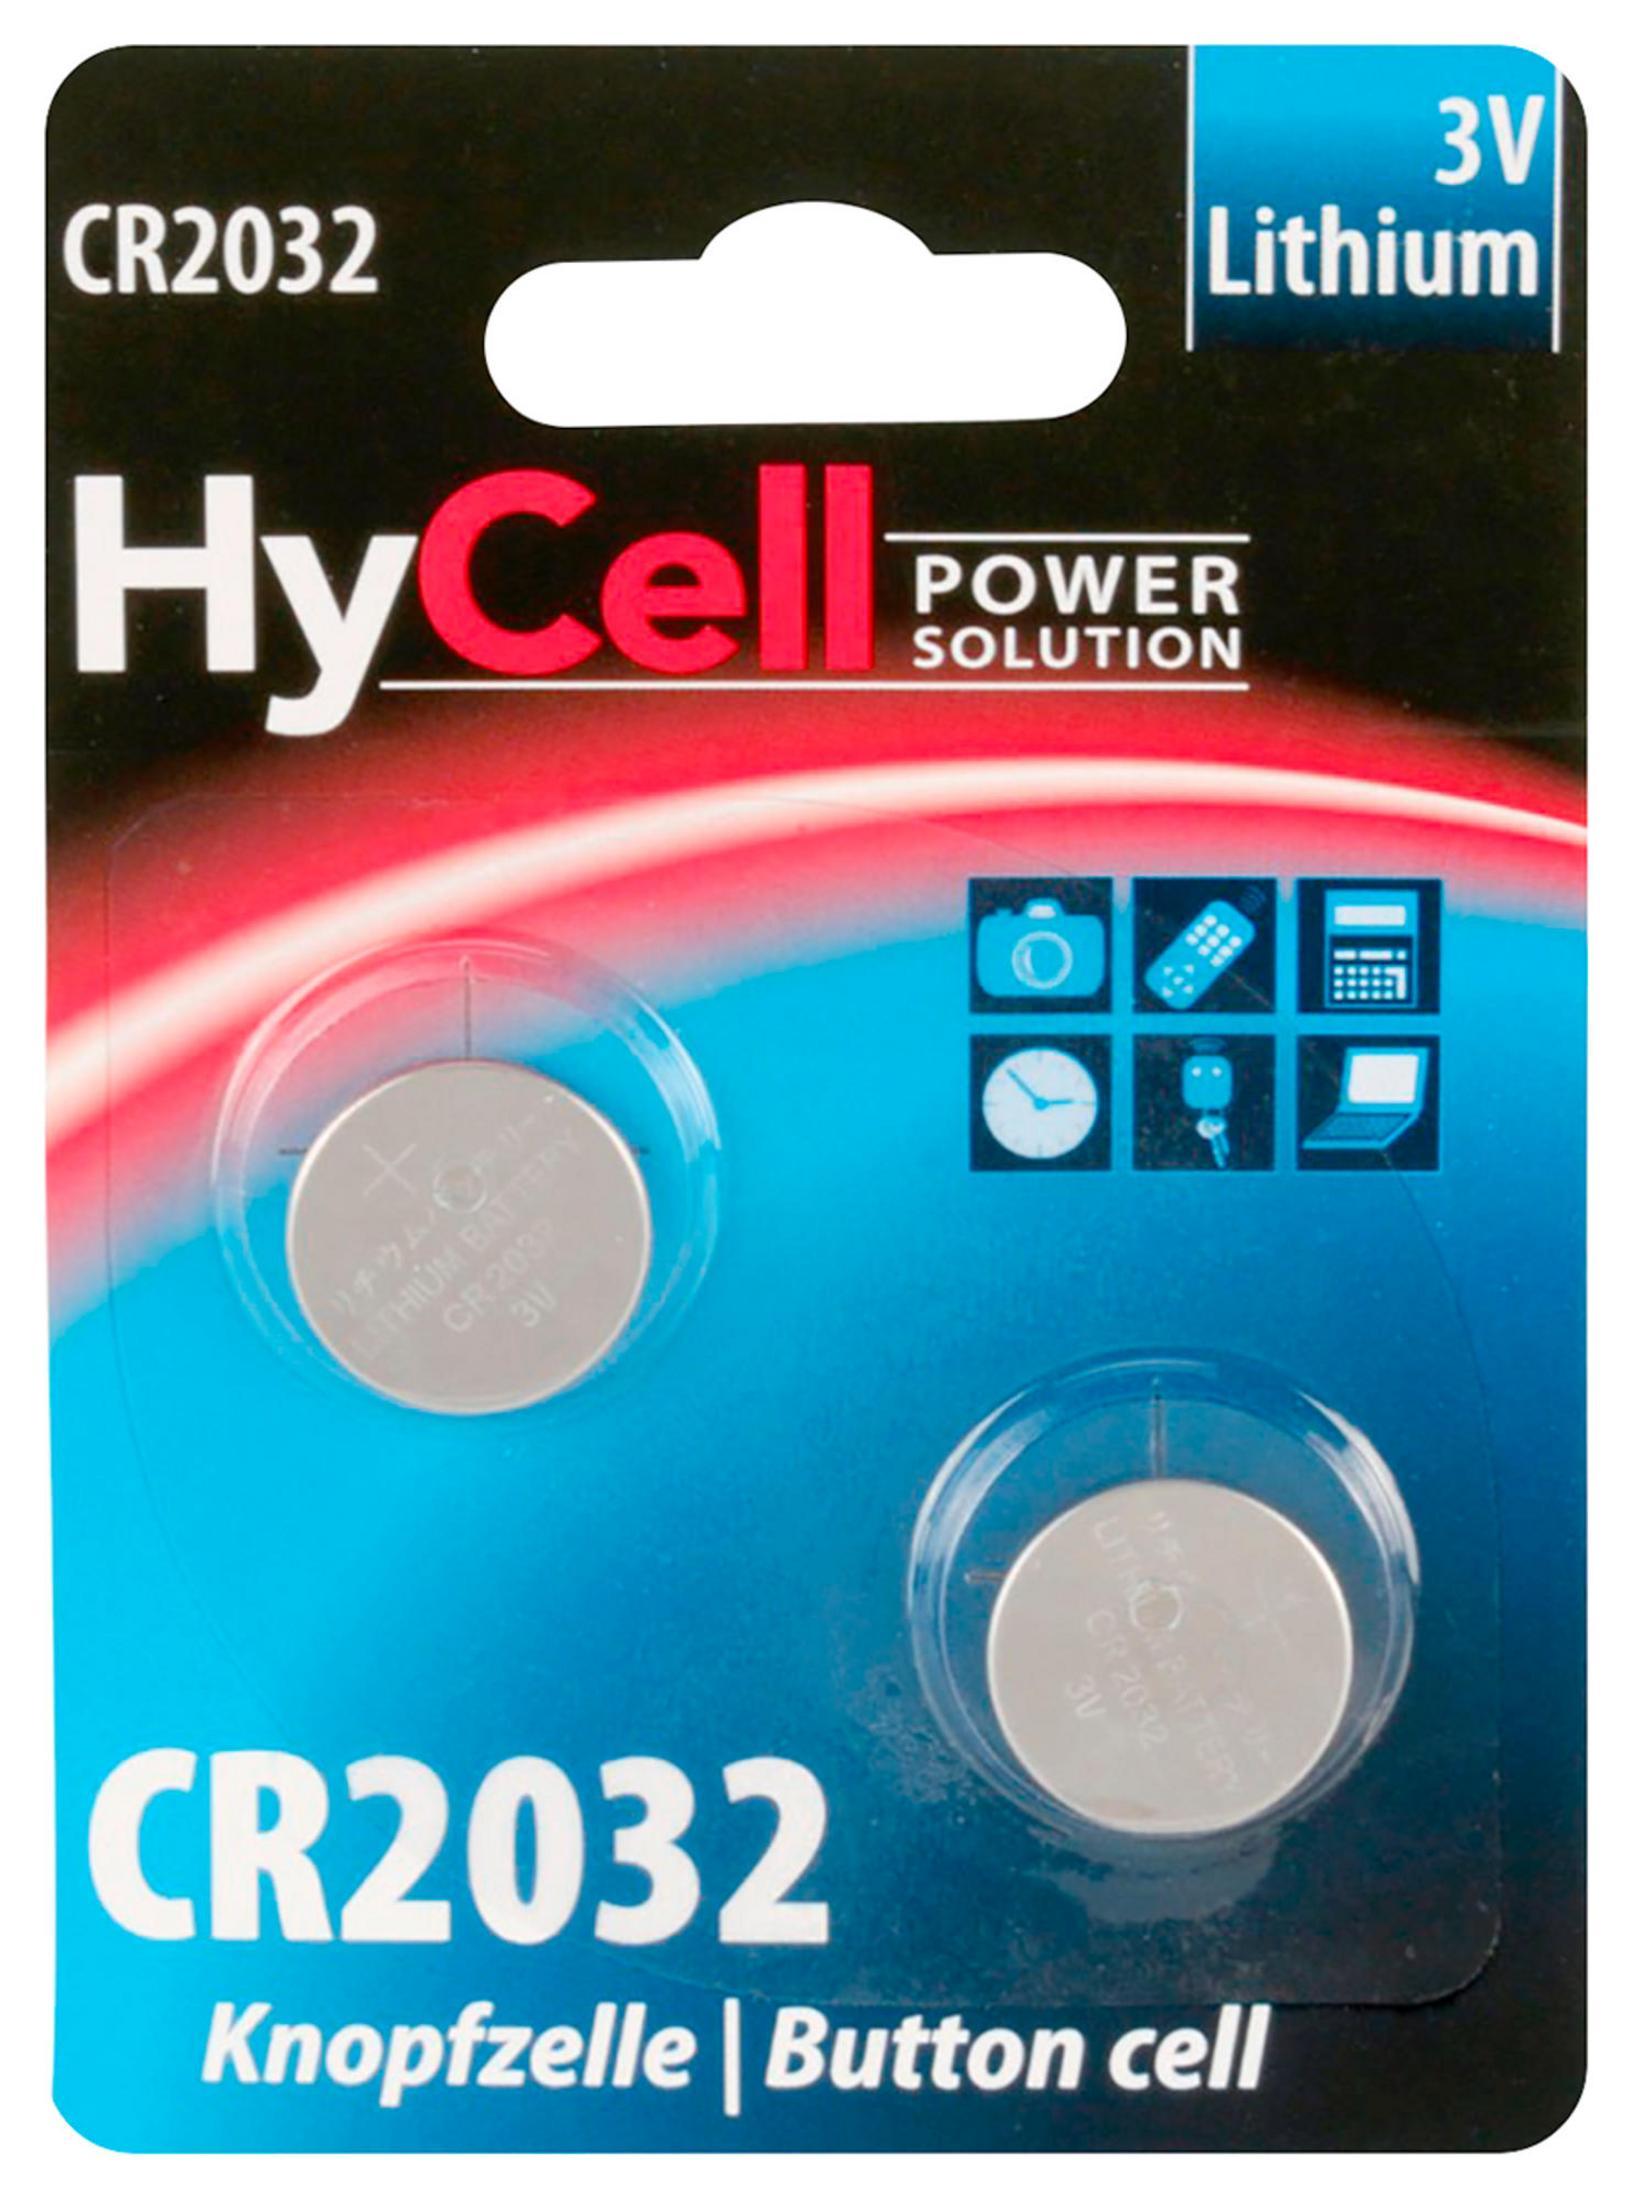 ANSMANN ANSMANN 5020202 Volt Stück HyCell Lithium, Knopfzelle 3V Lithium CR2032 2 3 Knopfzellen Knopfzellen, Mainboardbatterie